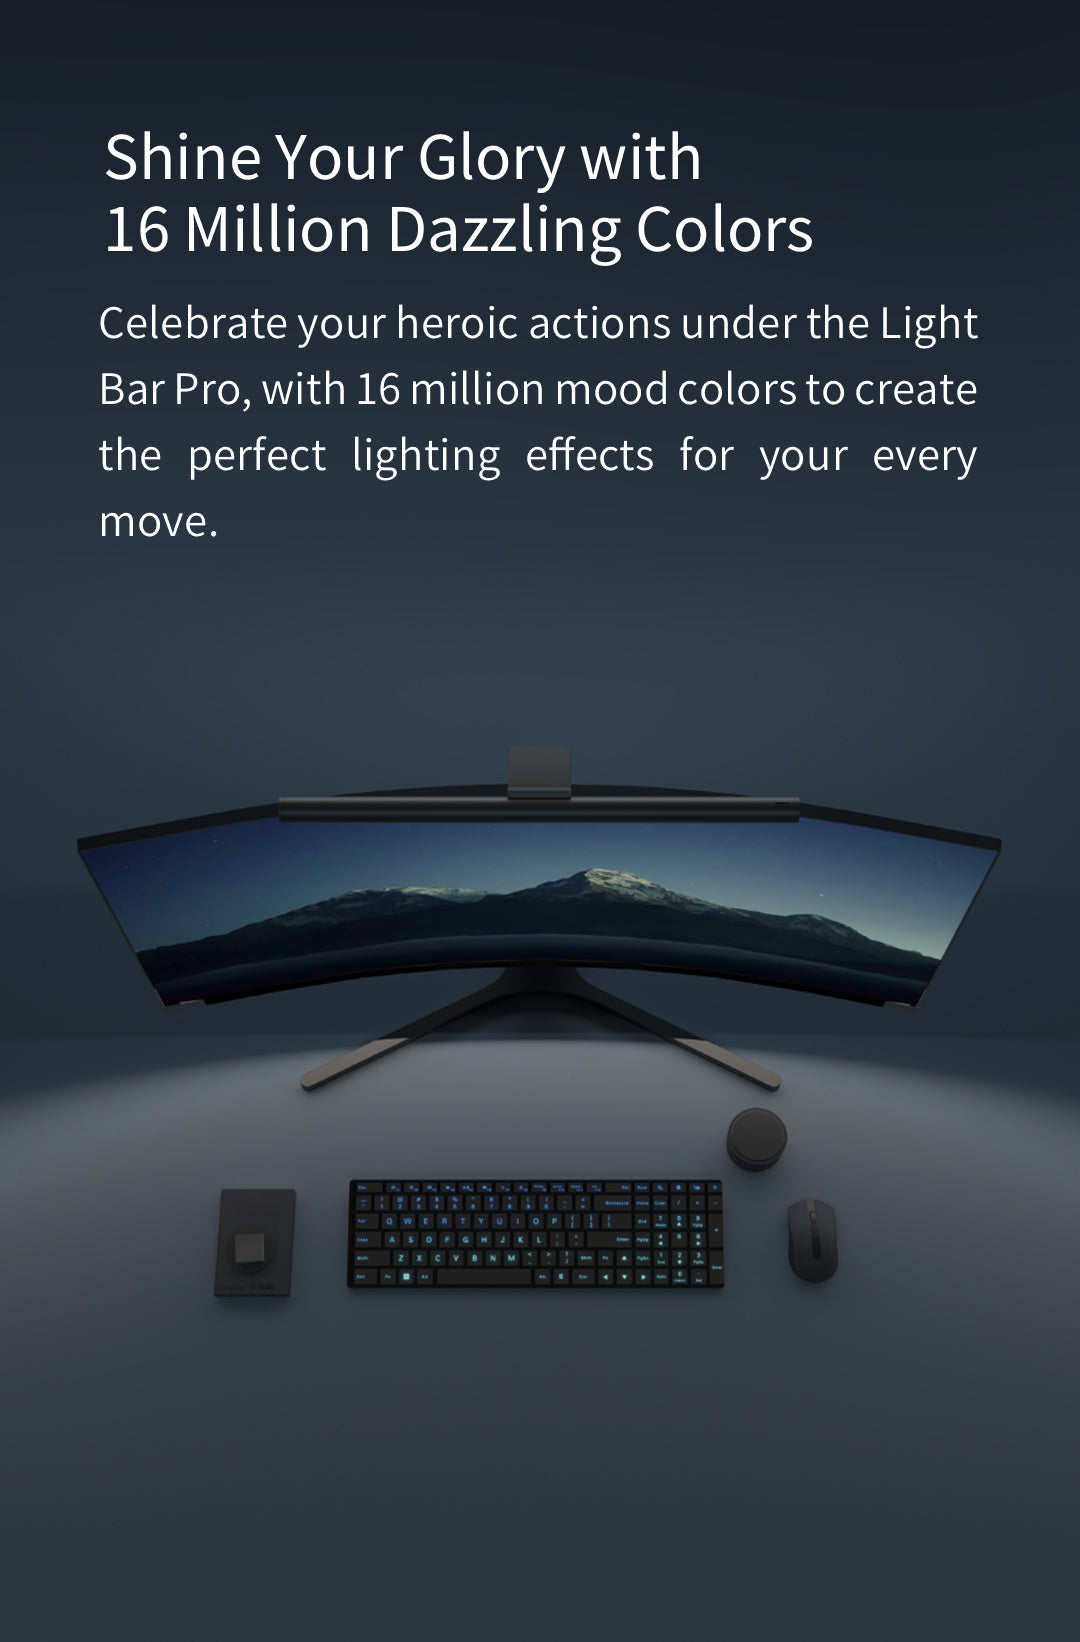 Yeelight Barre lumineuse pour écran LED Pro (280 lm) - digitec